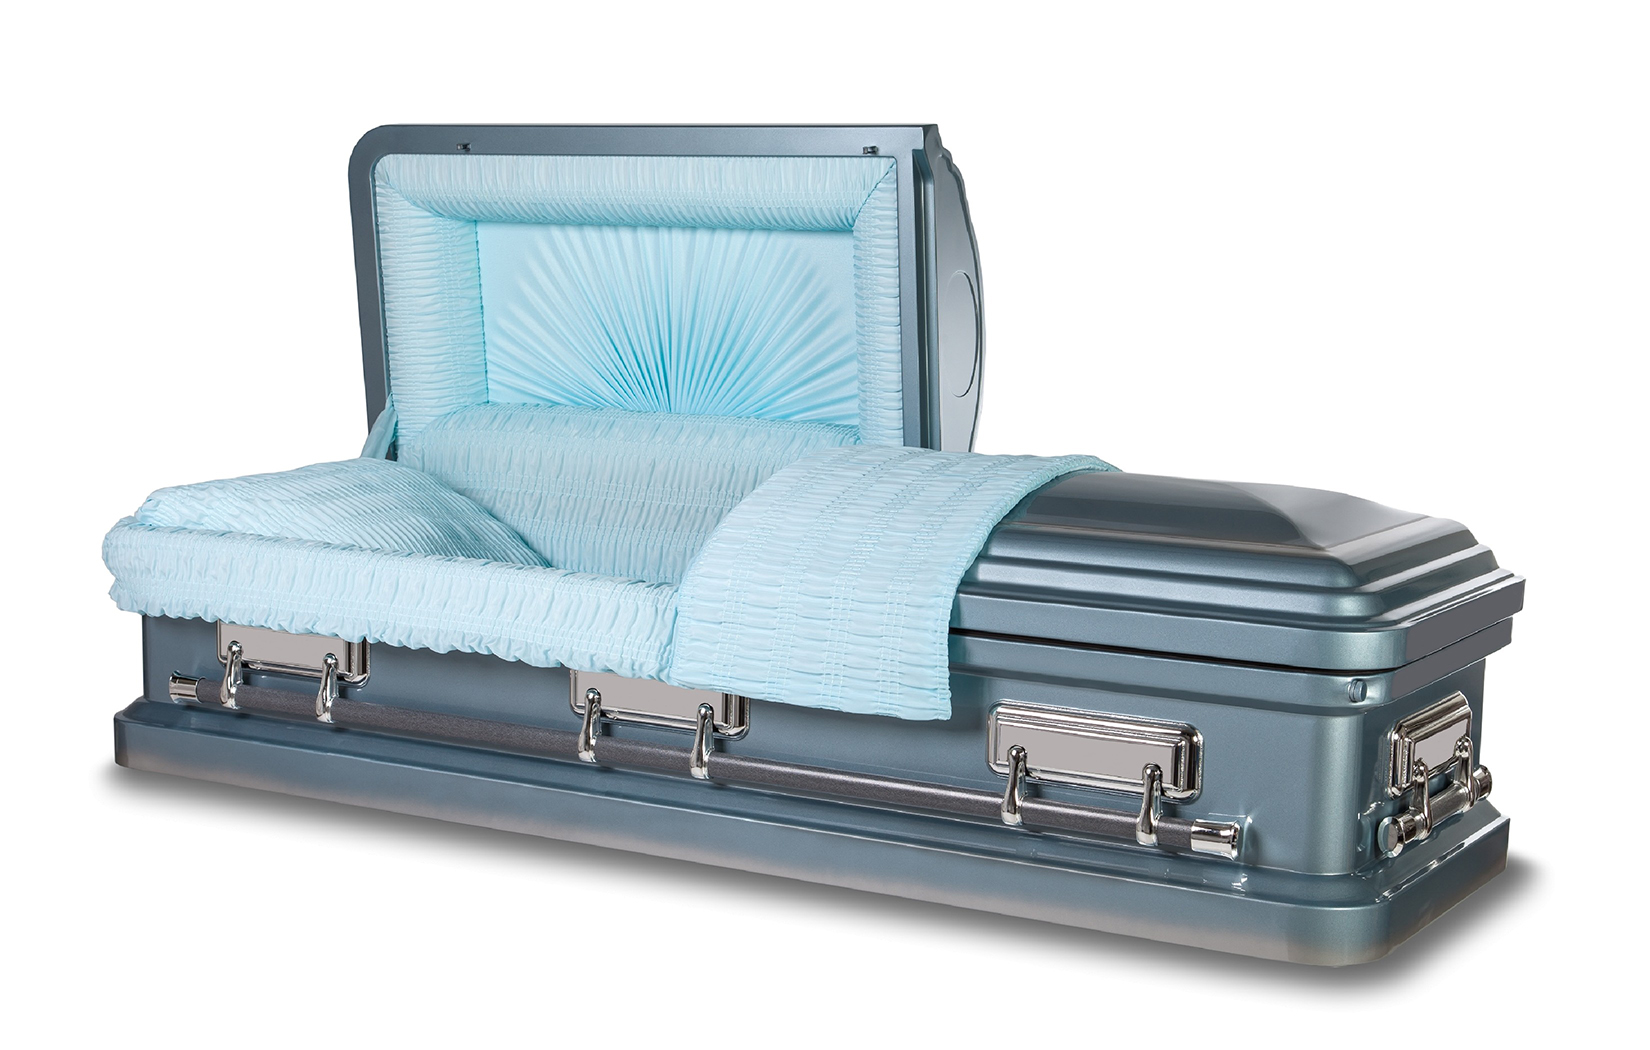 light blue casket